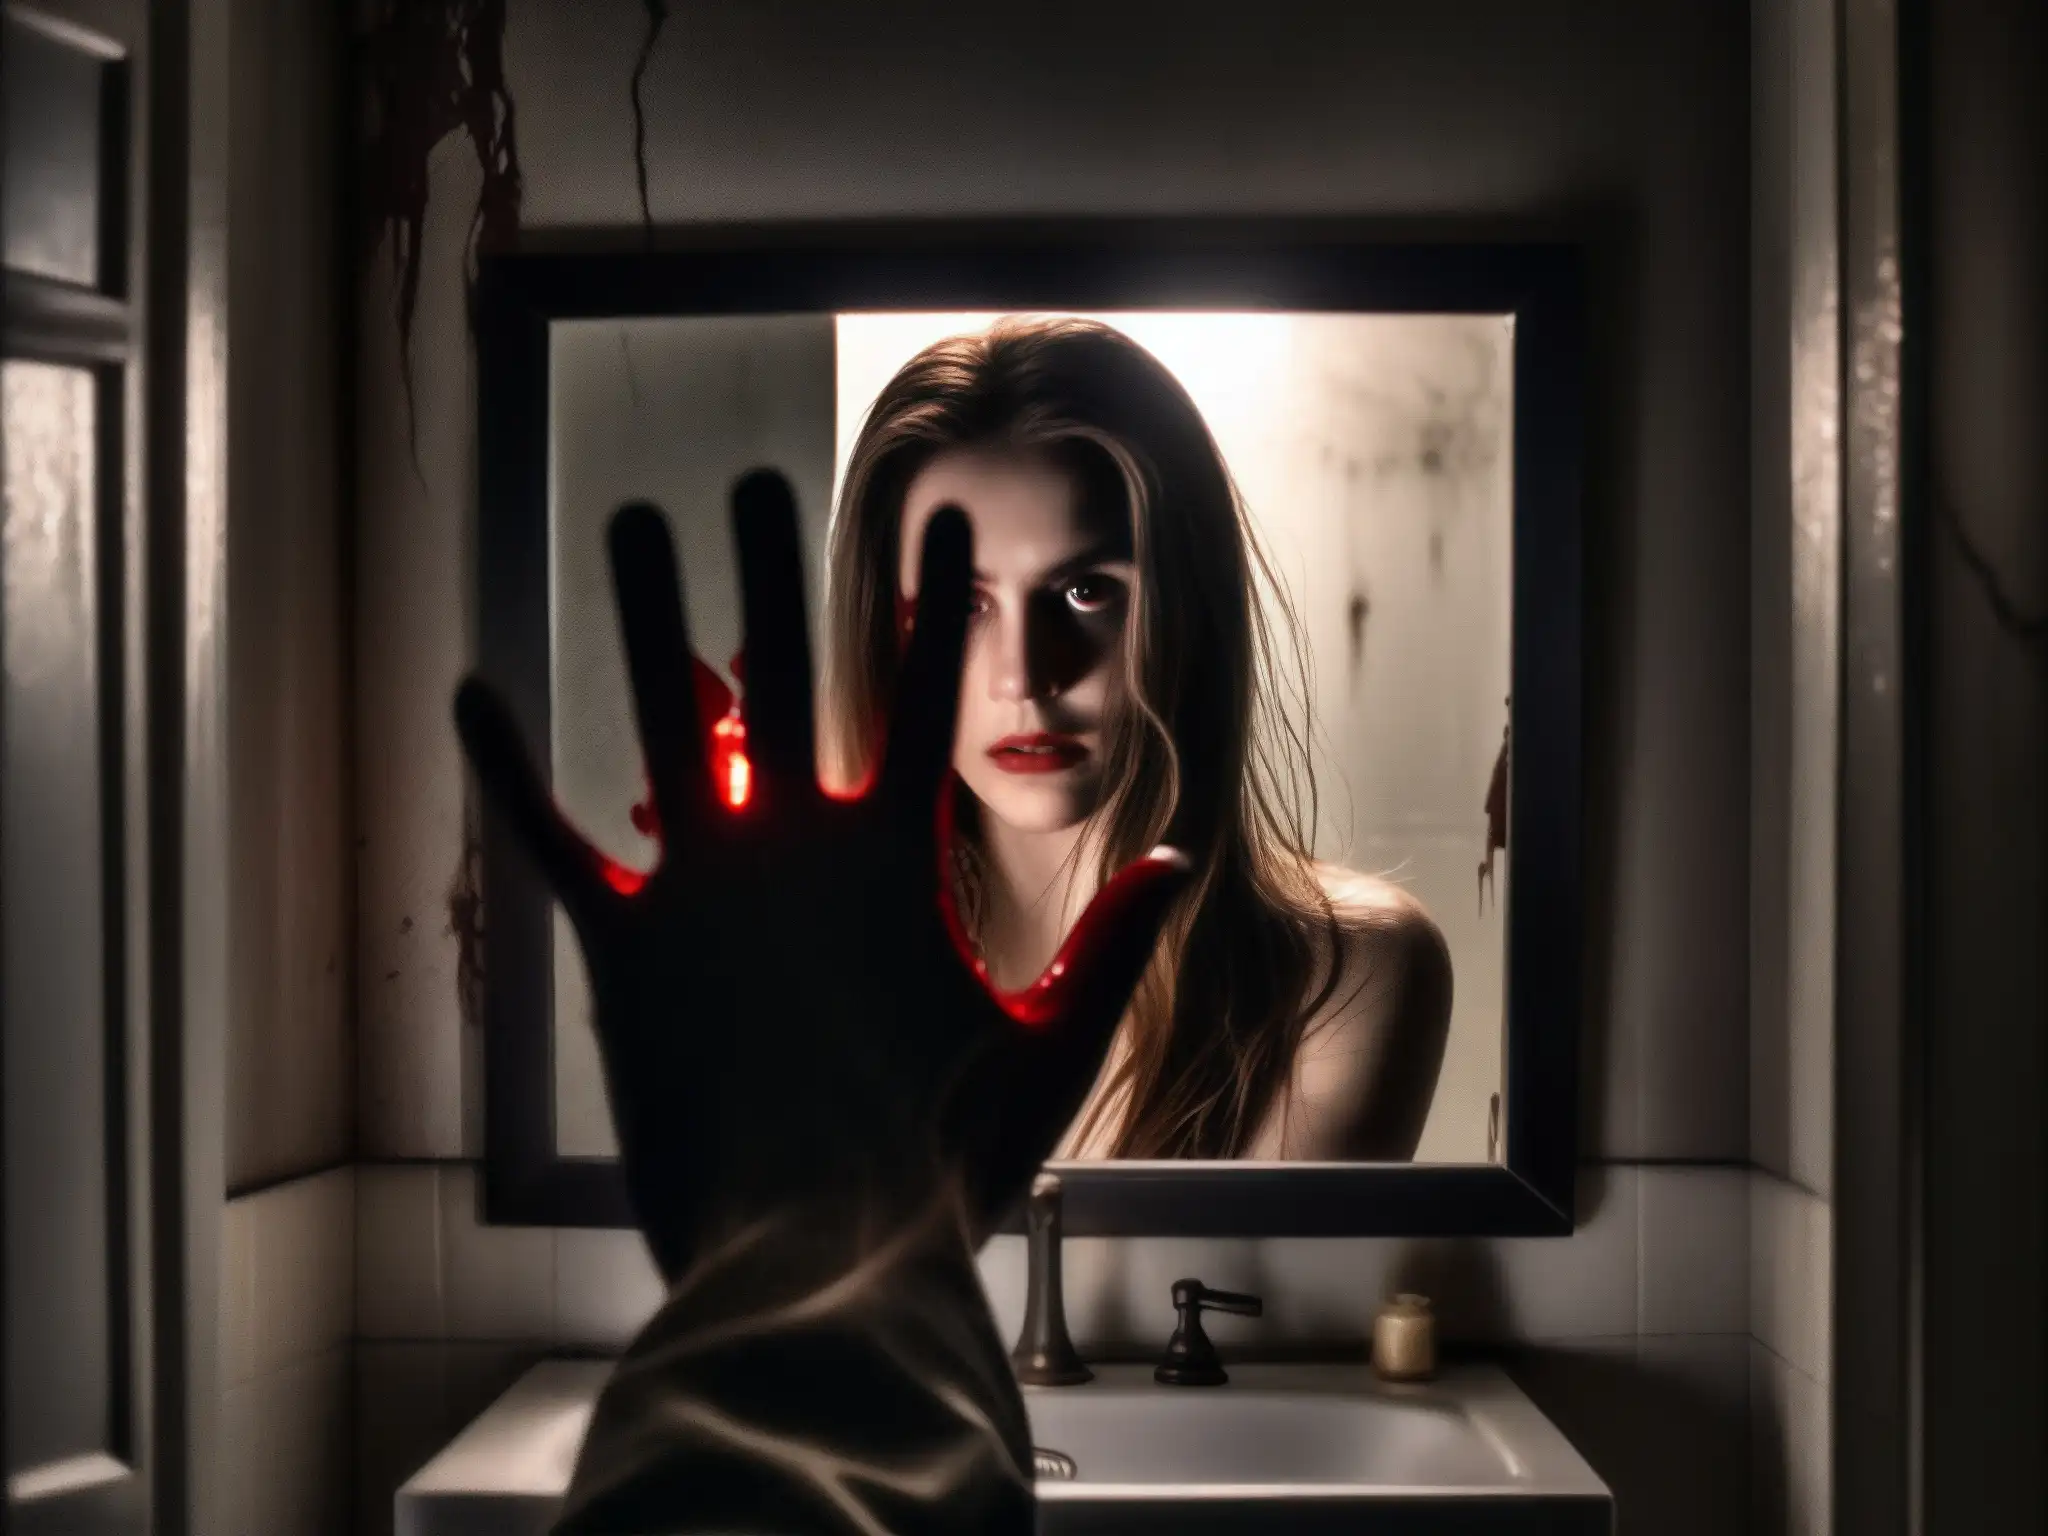 En el oscuro baño, un espejo agrietado refleja una figura sombría con ojos inyectados en sangre y cabello enredado